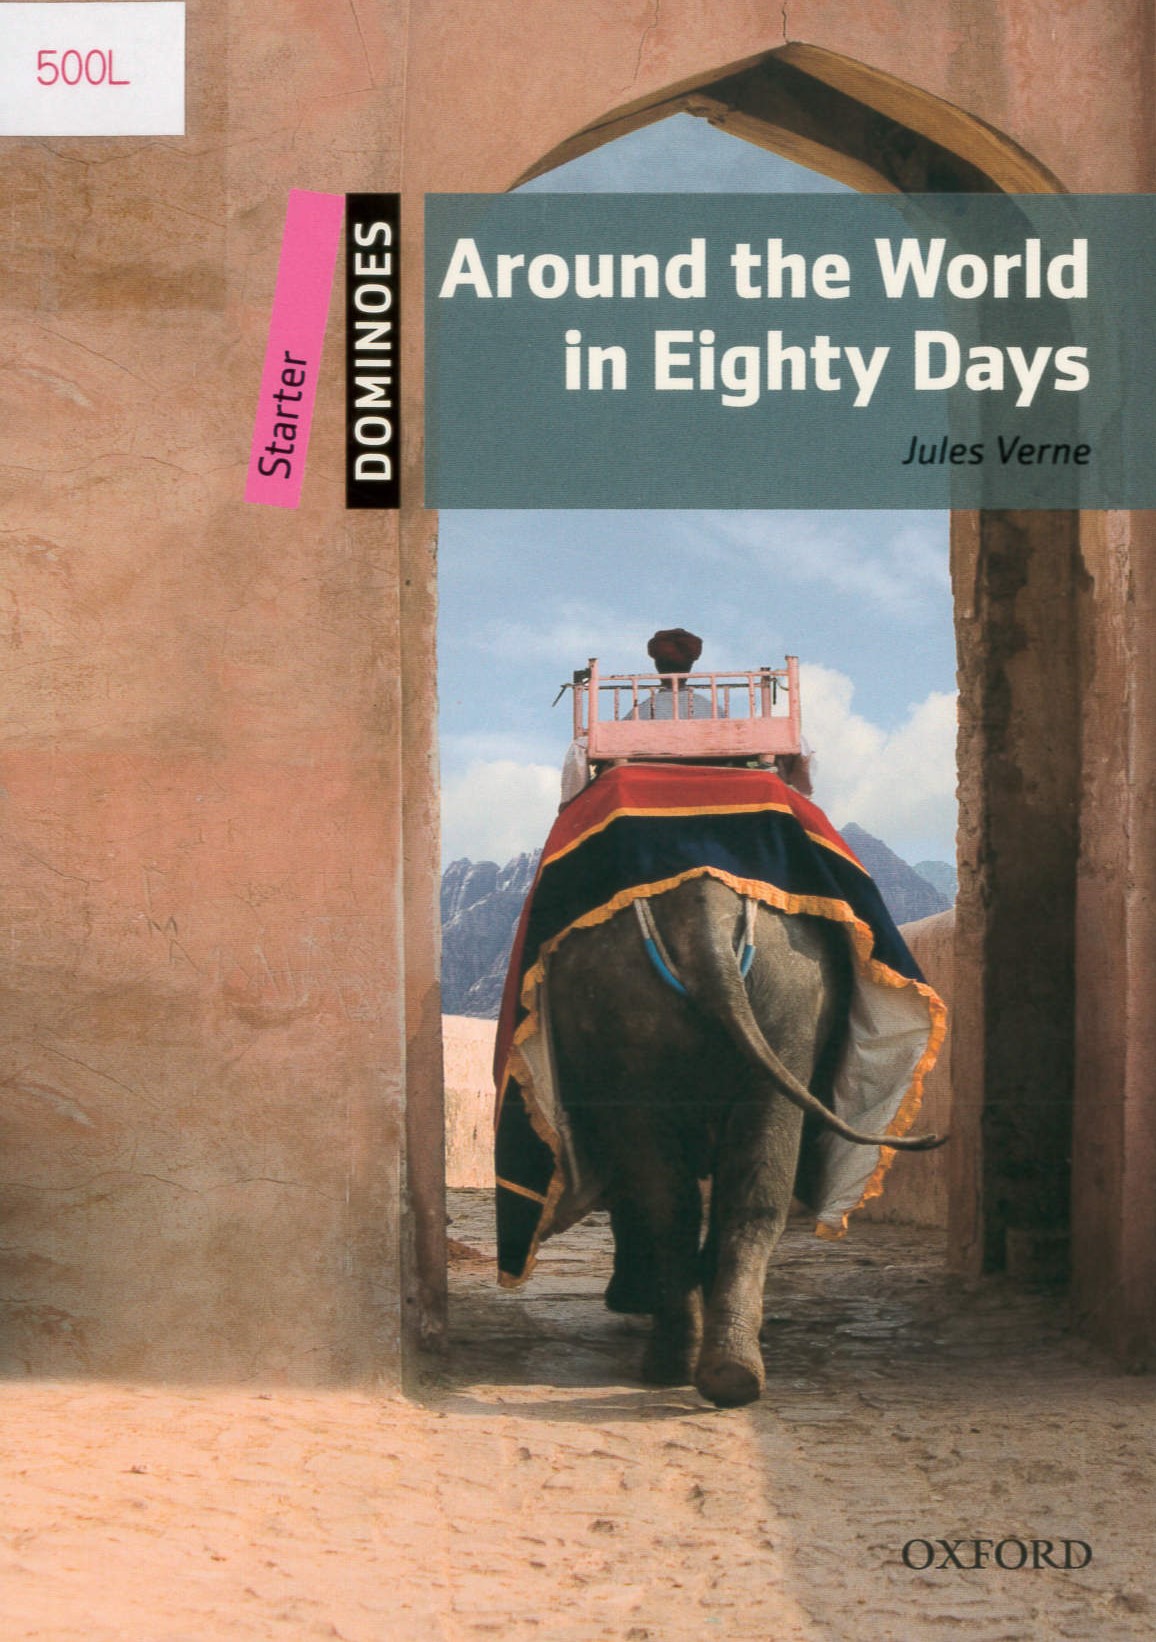 Around the world in eighty days /